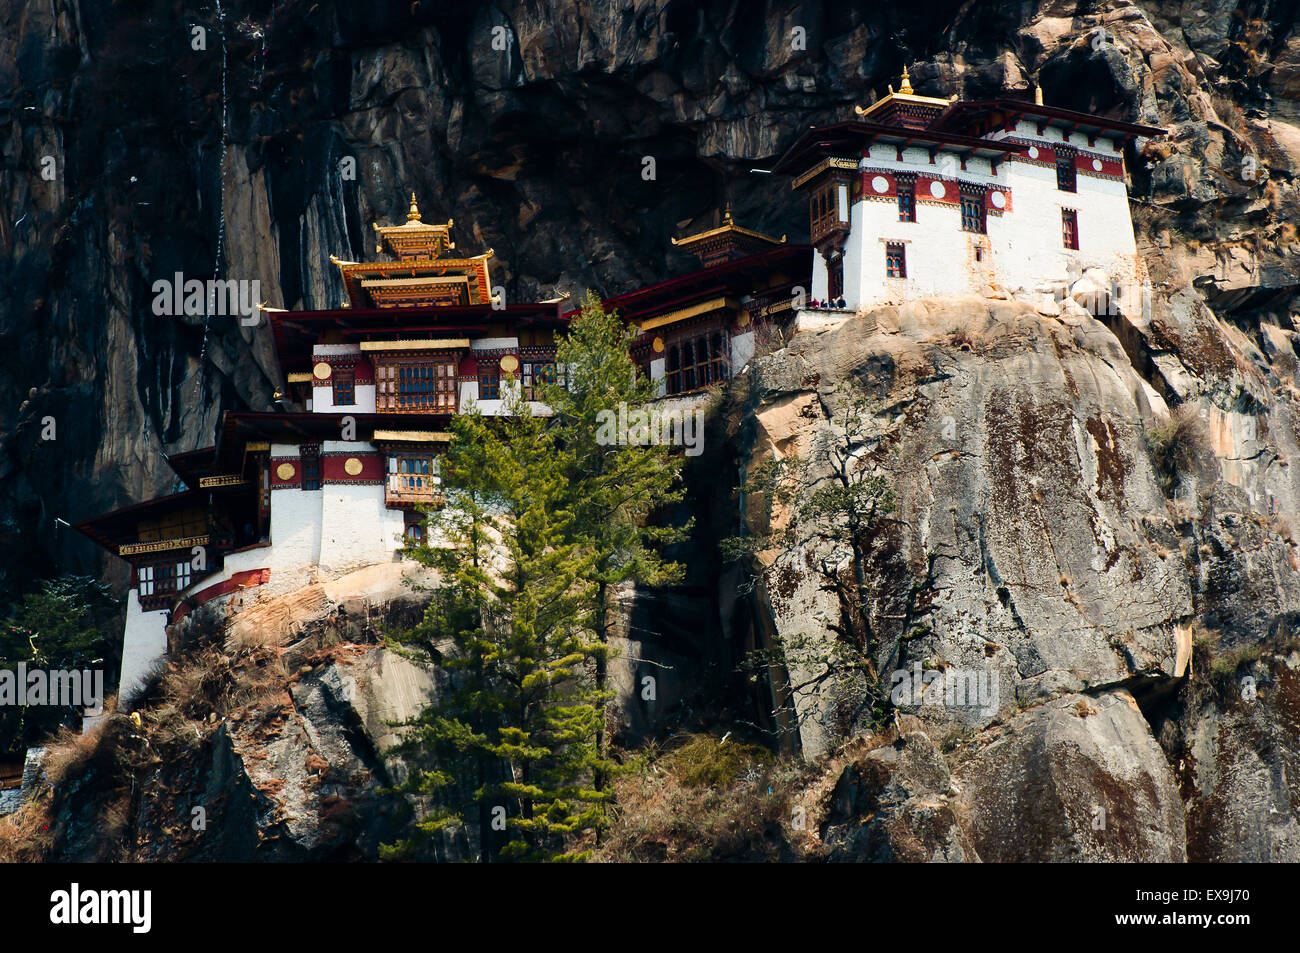 Monastère de Taktsang (Tiger's Nest) - Bhoutan Banque D'Images